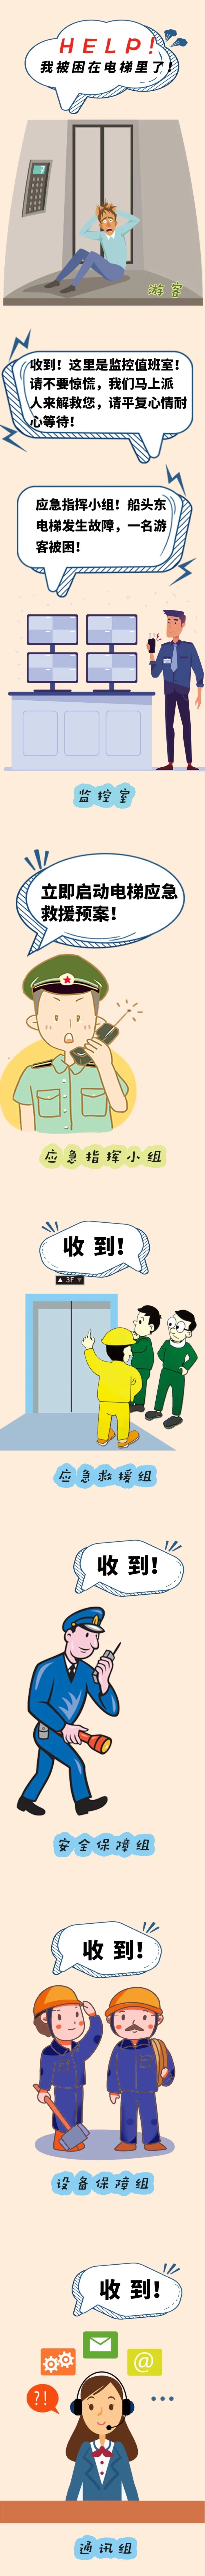 渡江战役纪念馆开展电梯应急救援演练